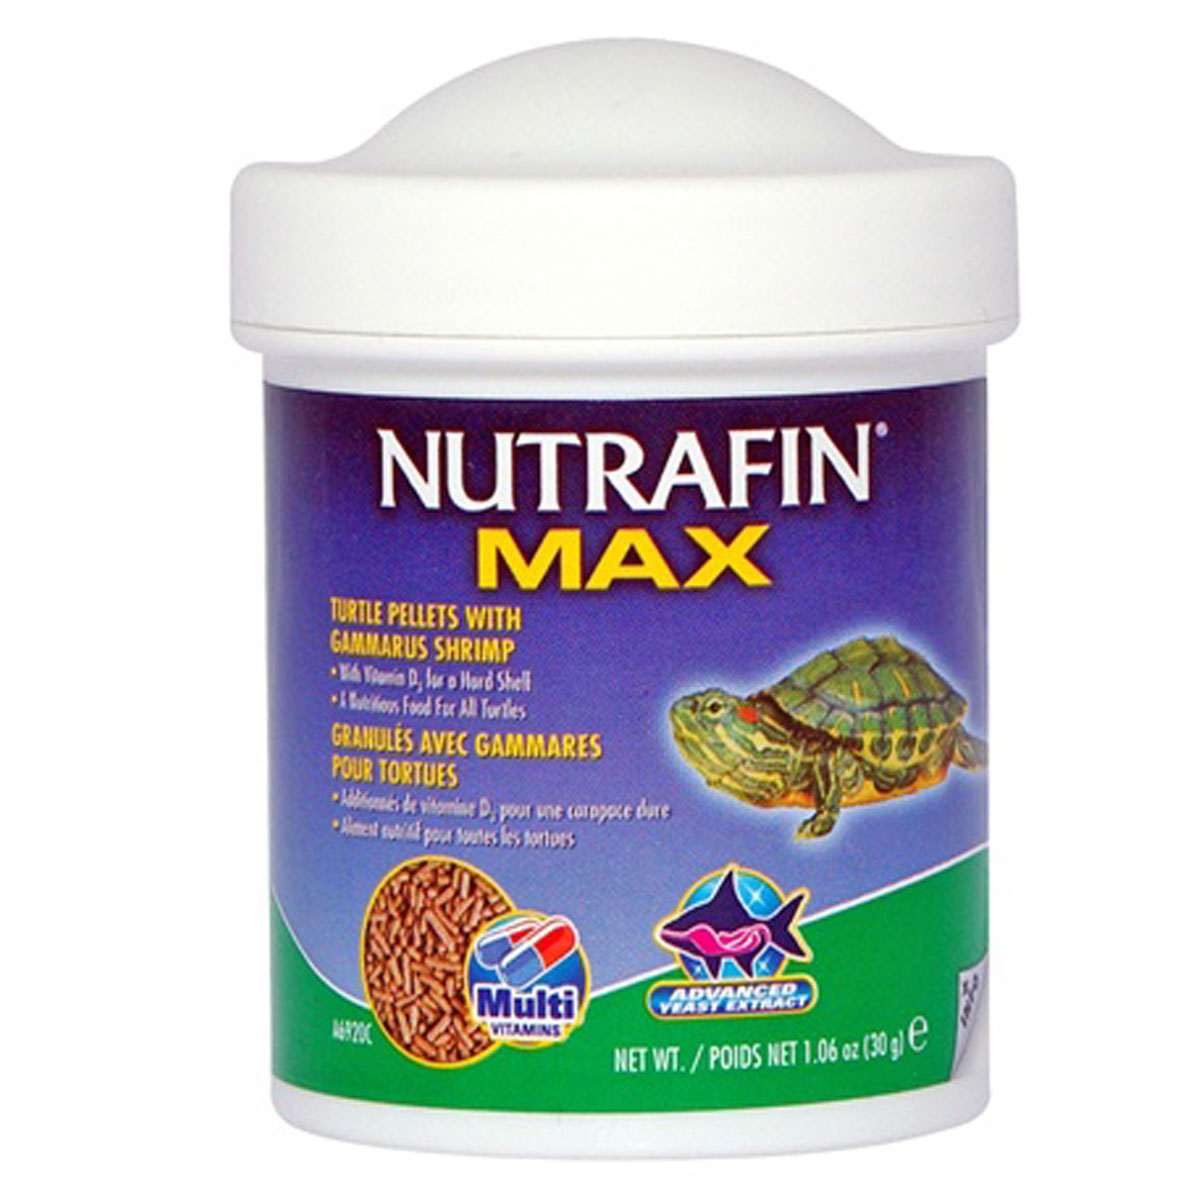 NUTRAFIN MAX TORTUGA 30 G.